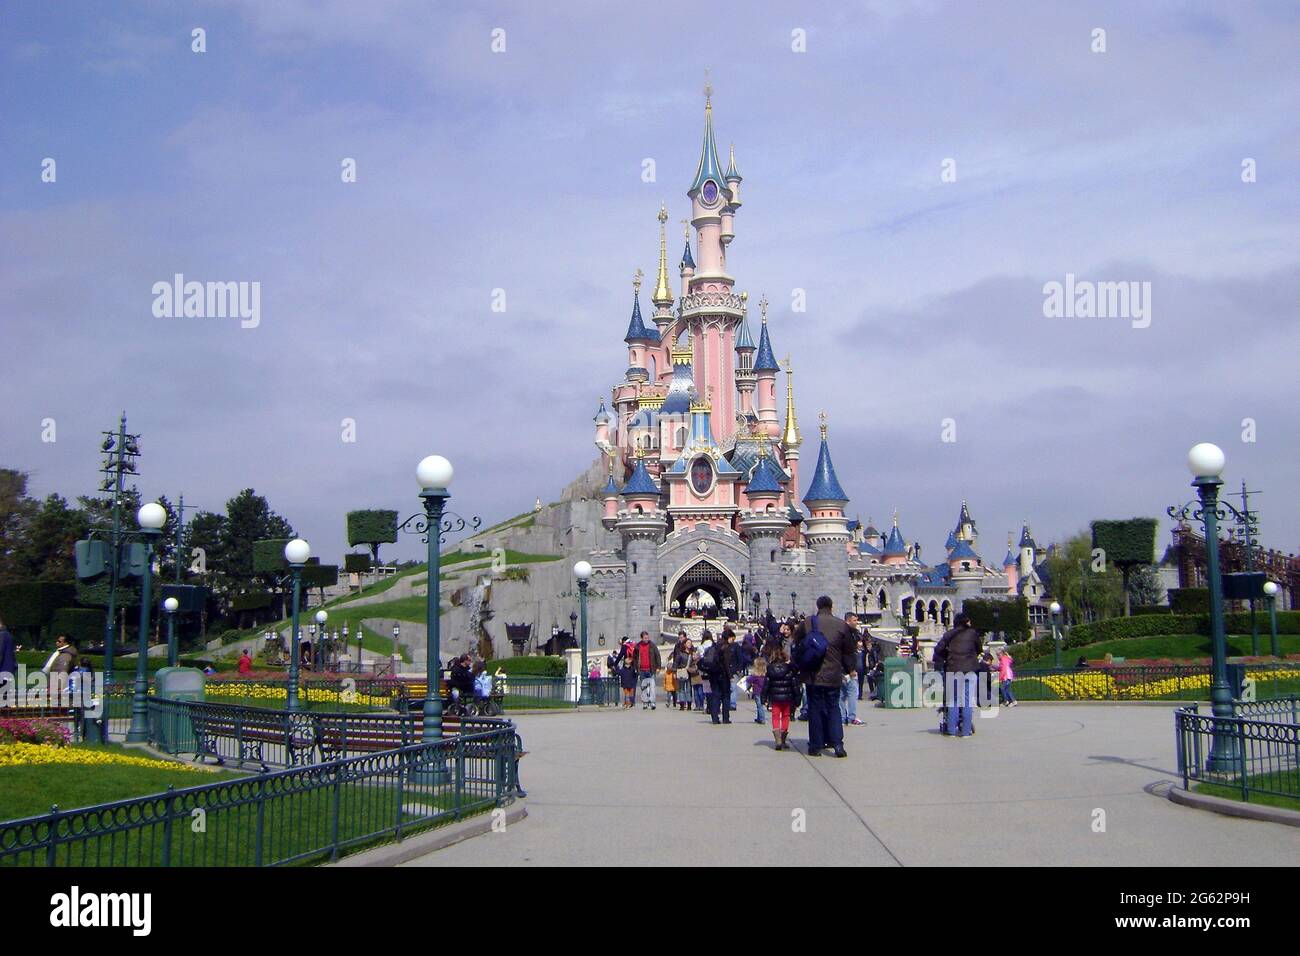 Le magnifique parc disneyland avec le château bondé de touristes, en Europe. Banque D'Images